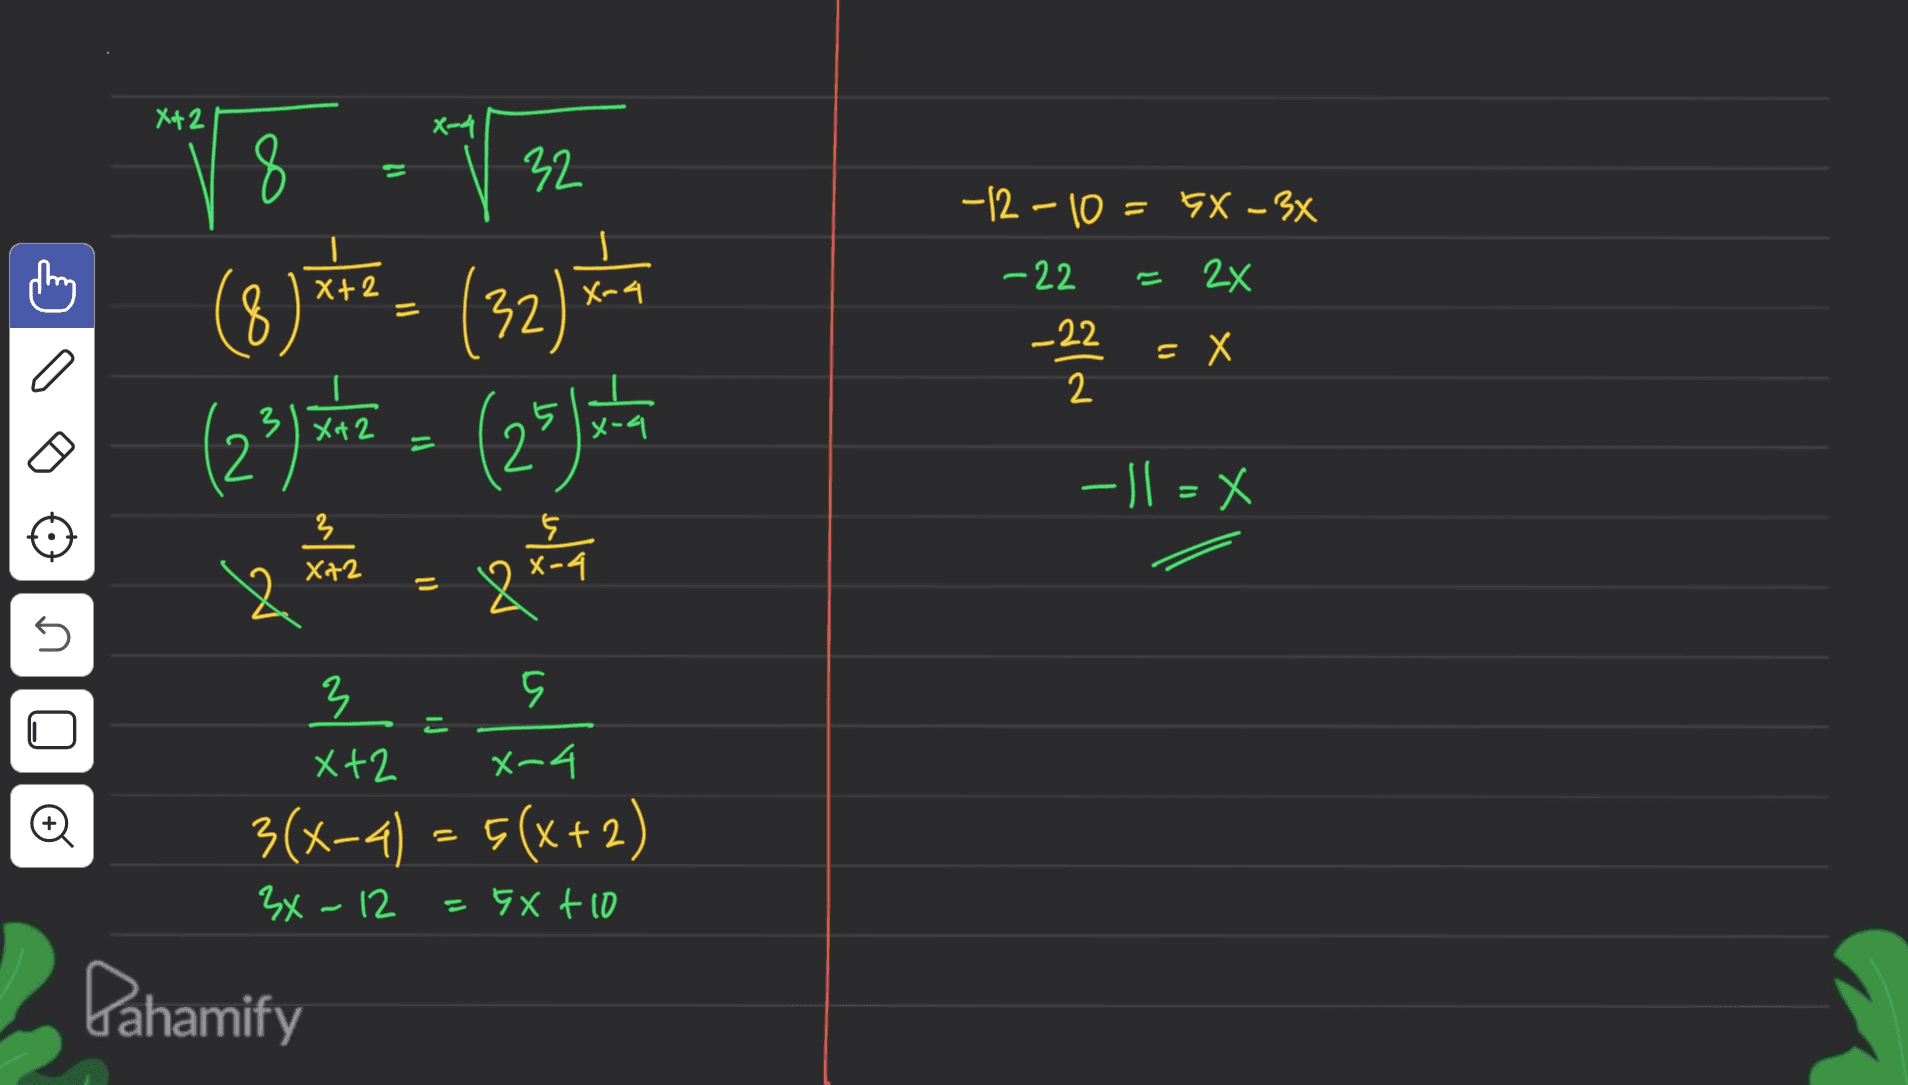 X+ 2 8 11 -12-10 = 5x - 3x 2x X-4 V 32 (8)*** (32) (22)the = (25) v Quan -22 _22 2 -22 =X x-a -1=X 3 X72 = n iJ 00 X-4 3 5 X+2 3(x-4) - 5(x+2) 3x - 12 =5X + 10 Pahamify 